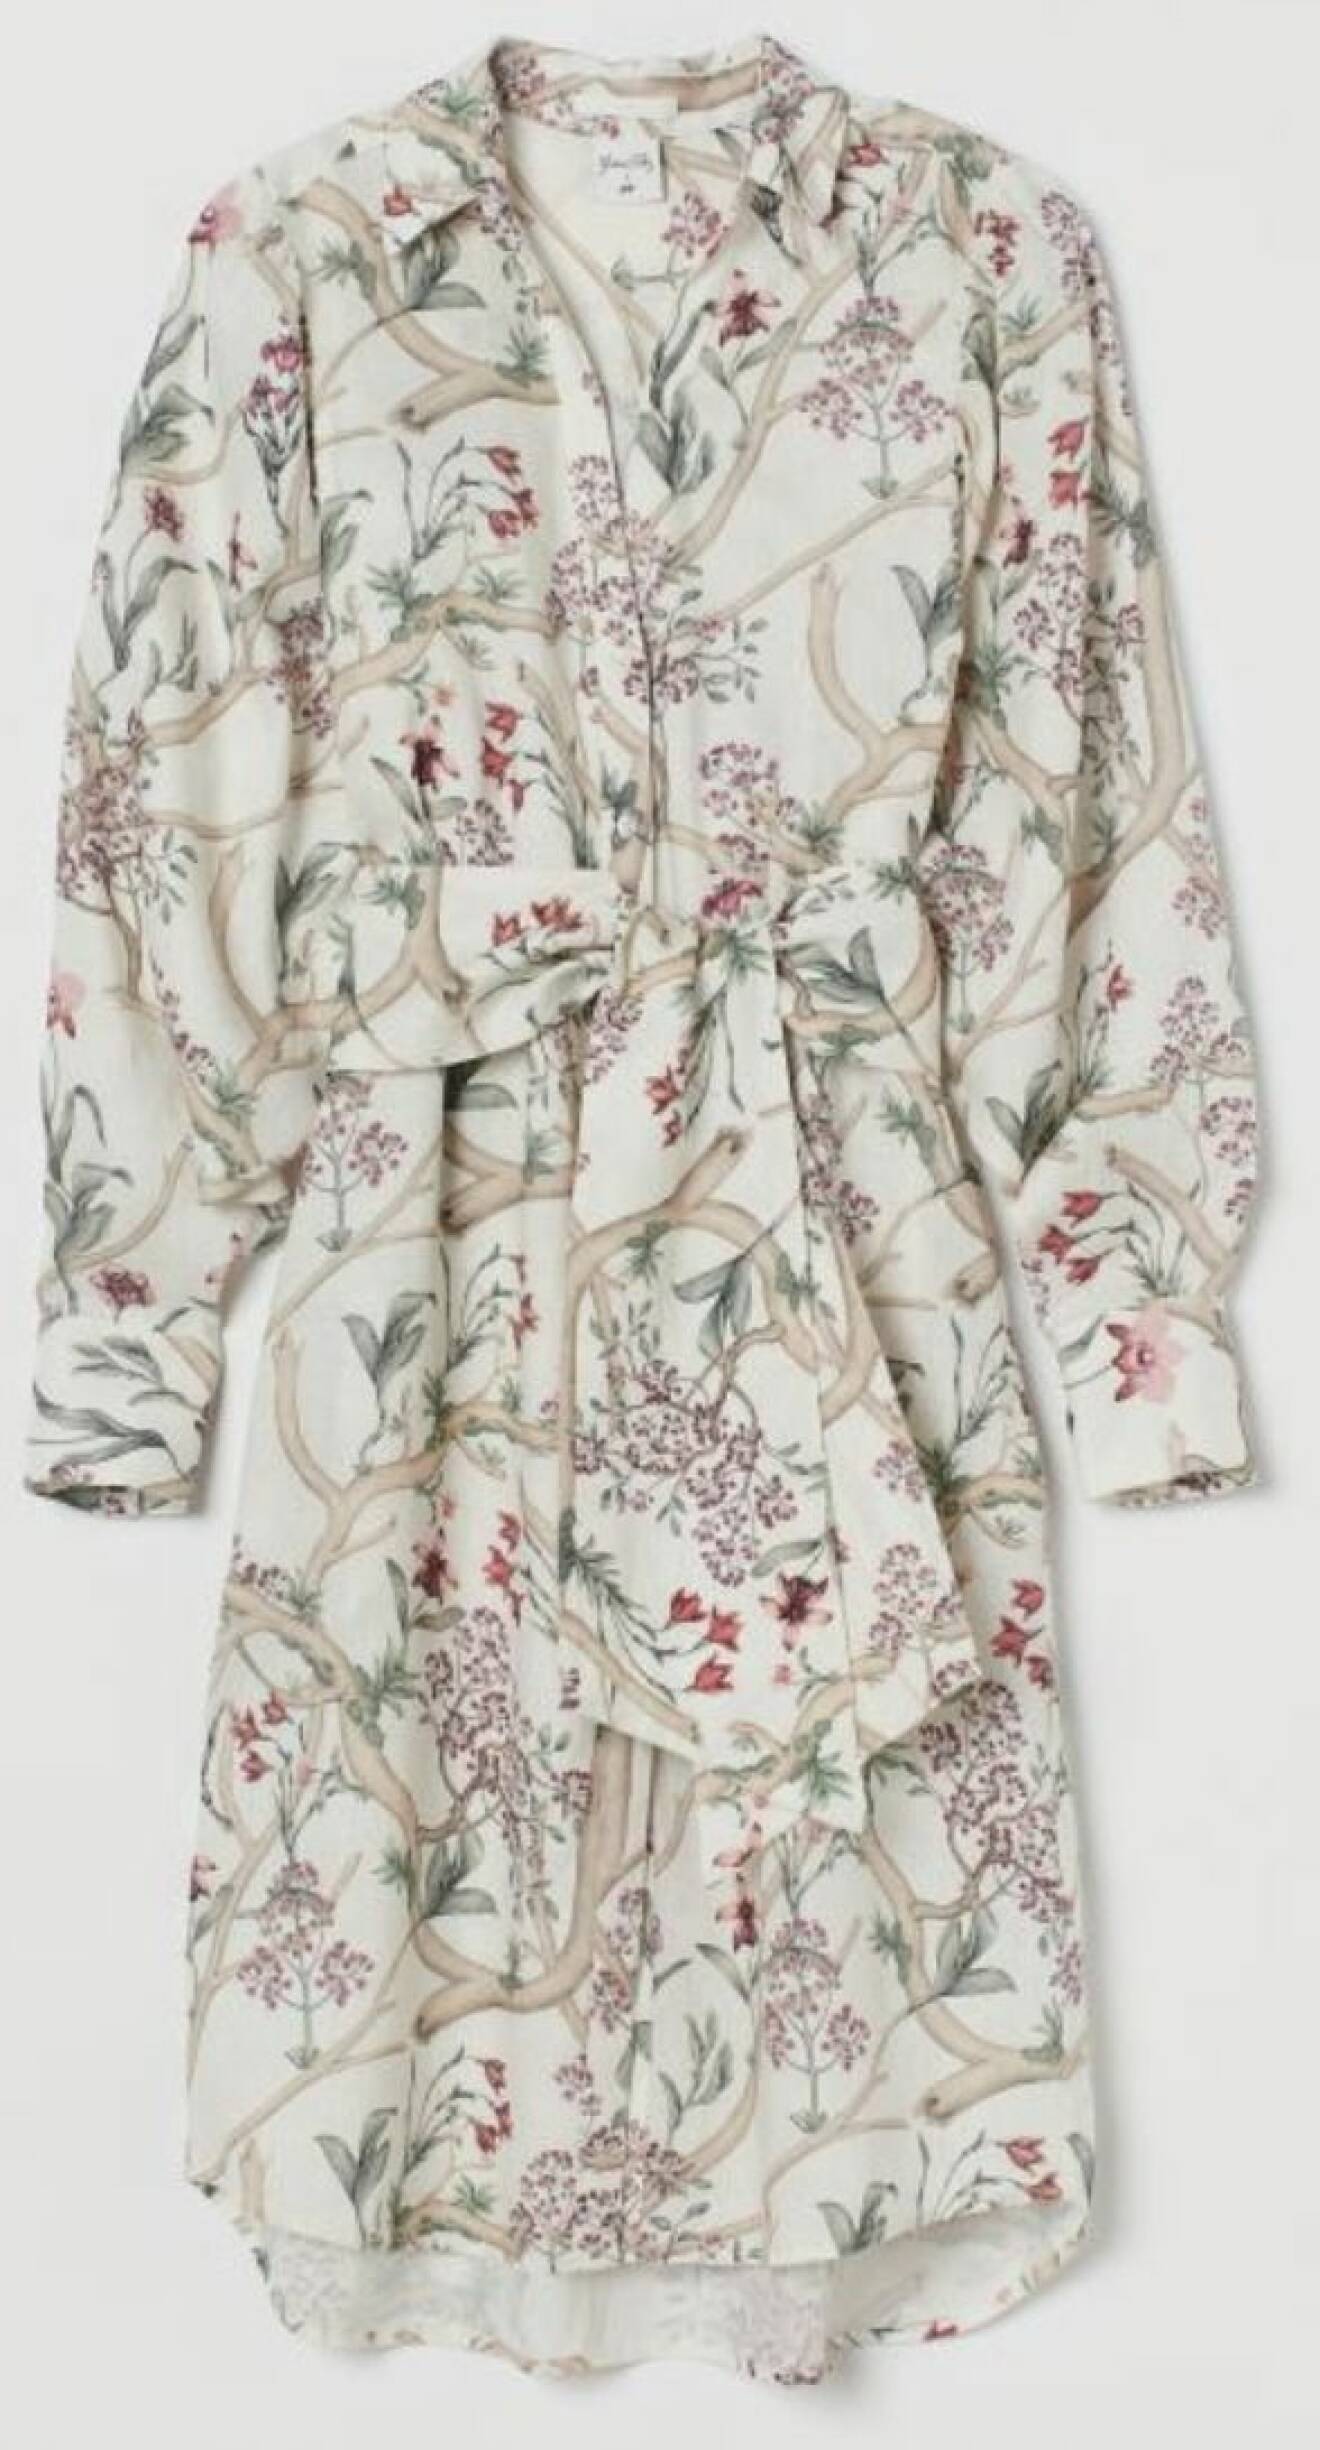 Blommig linneklänning i skjortmodell från Johanna Ortiz x H&M.